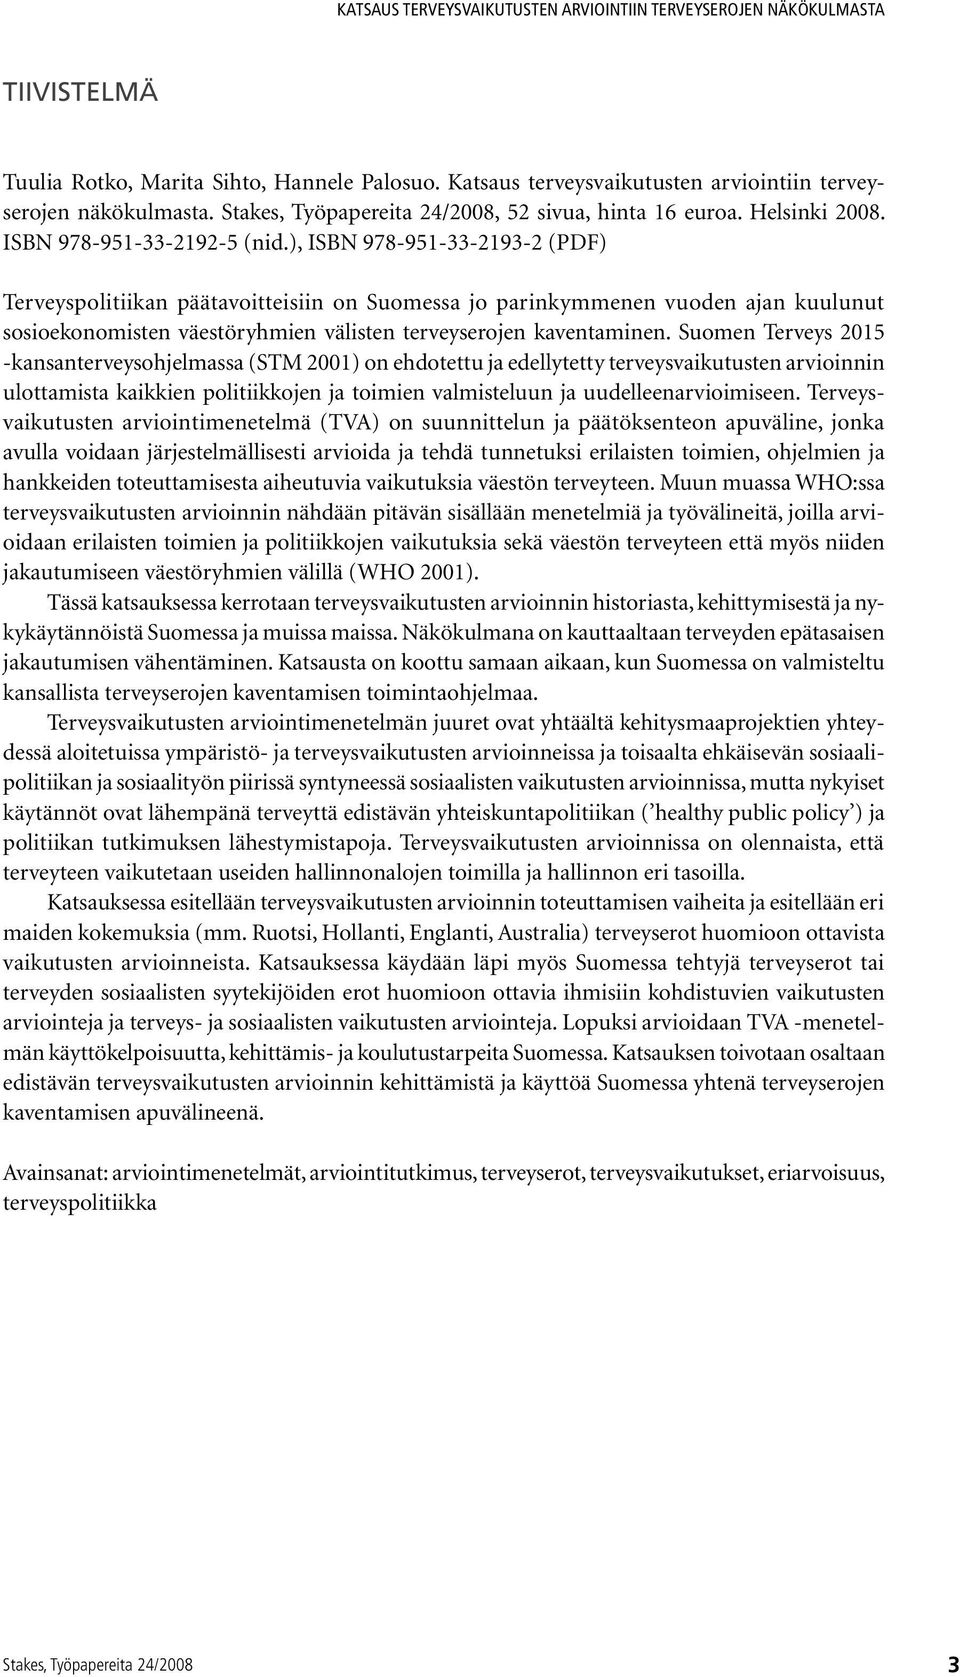 Suomen Terveys 2015 -kansanterveysohjelmassa (STM 2001) on ehdotettu ja edellytetty terveysvaikutusten arvioinnin ulottamista kaikkien politiikkojen ja toimien valmisteluun ja uudelleenarvioimiseen.